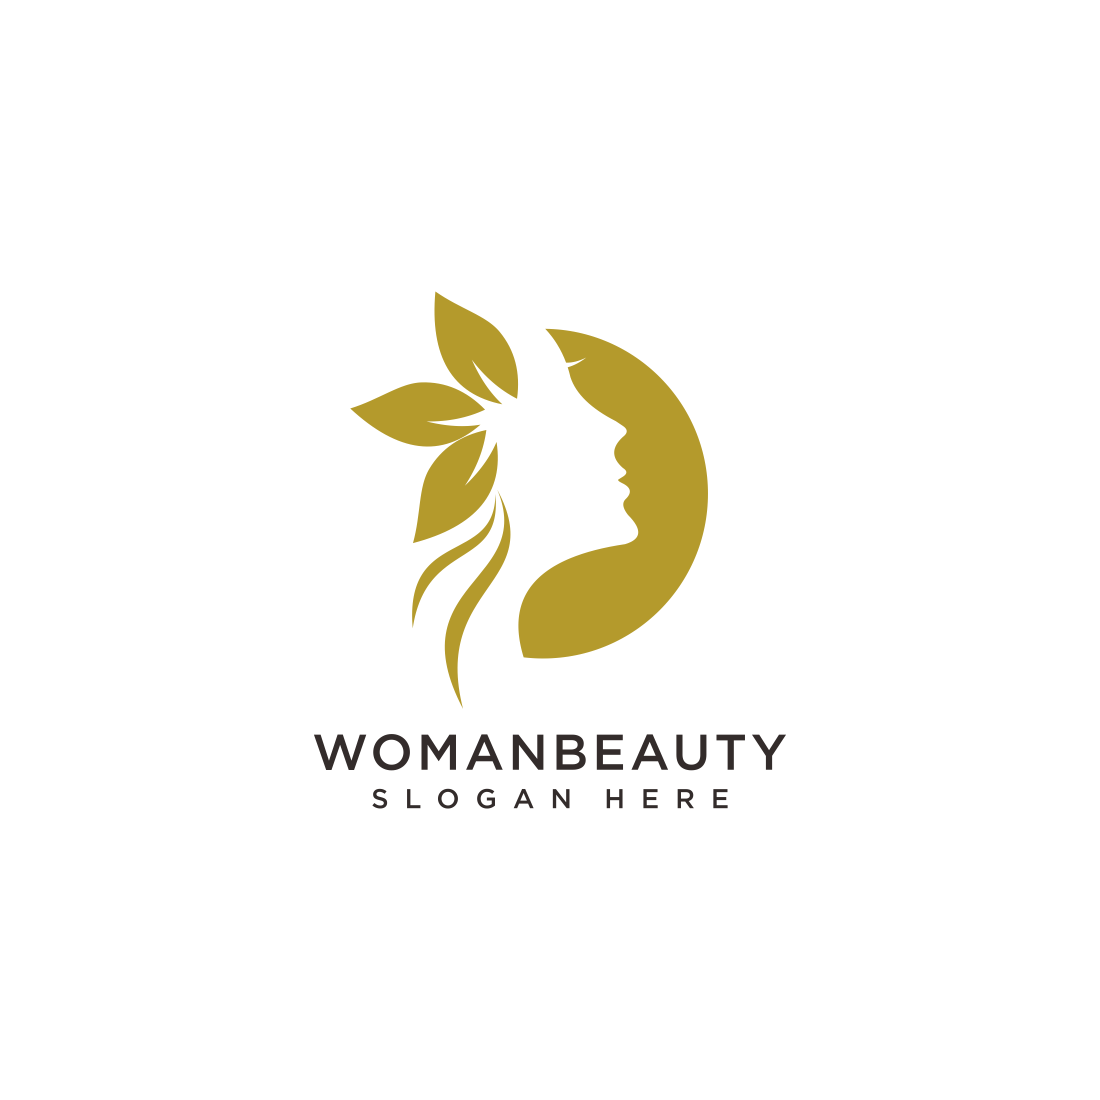 mowan face beauty logo vector preview image.